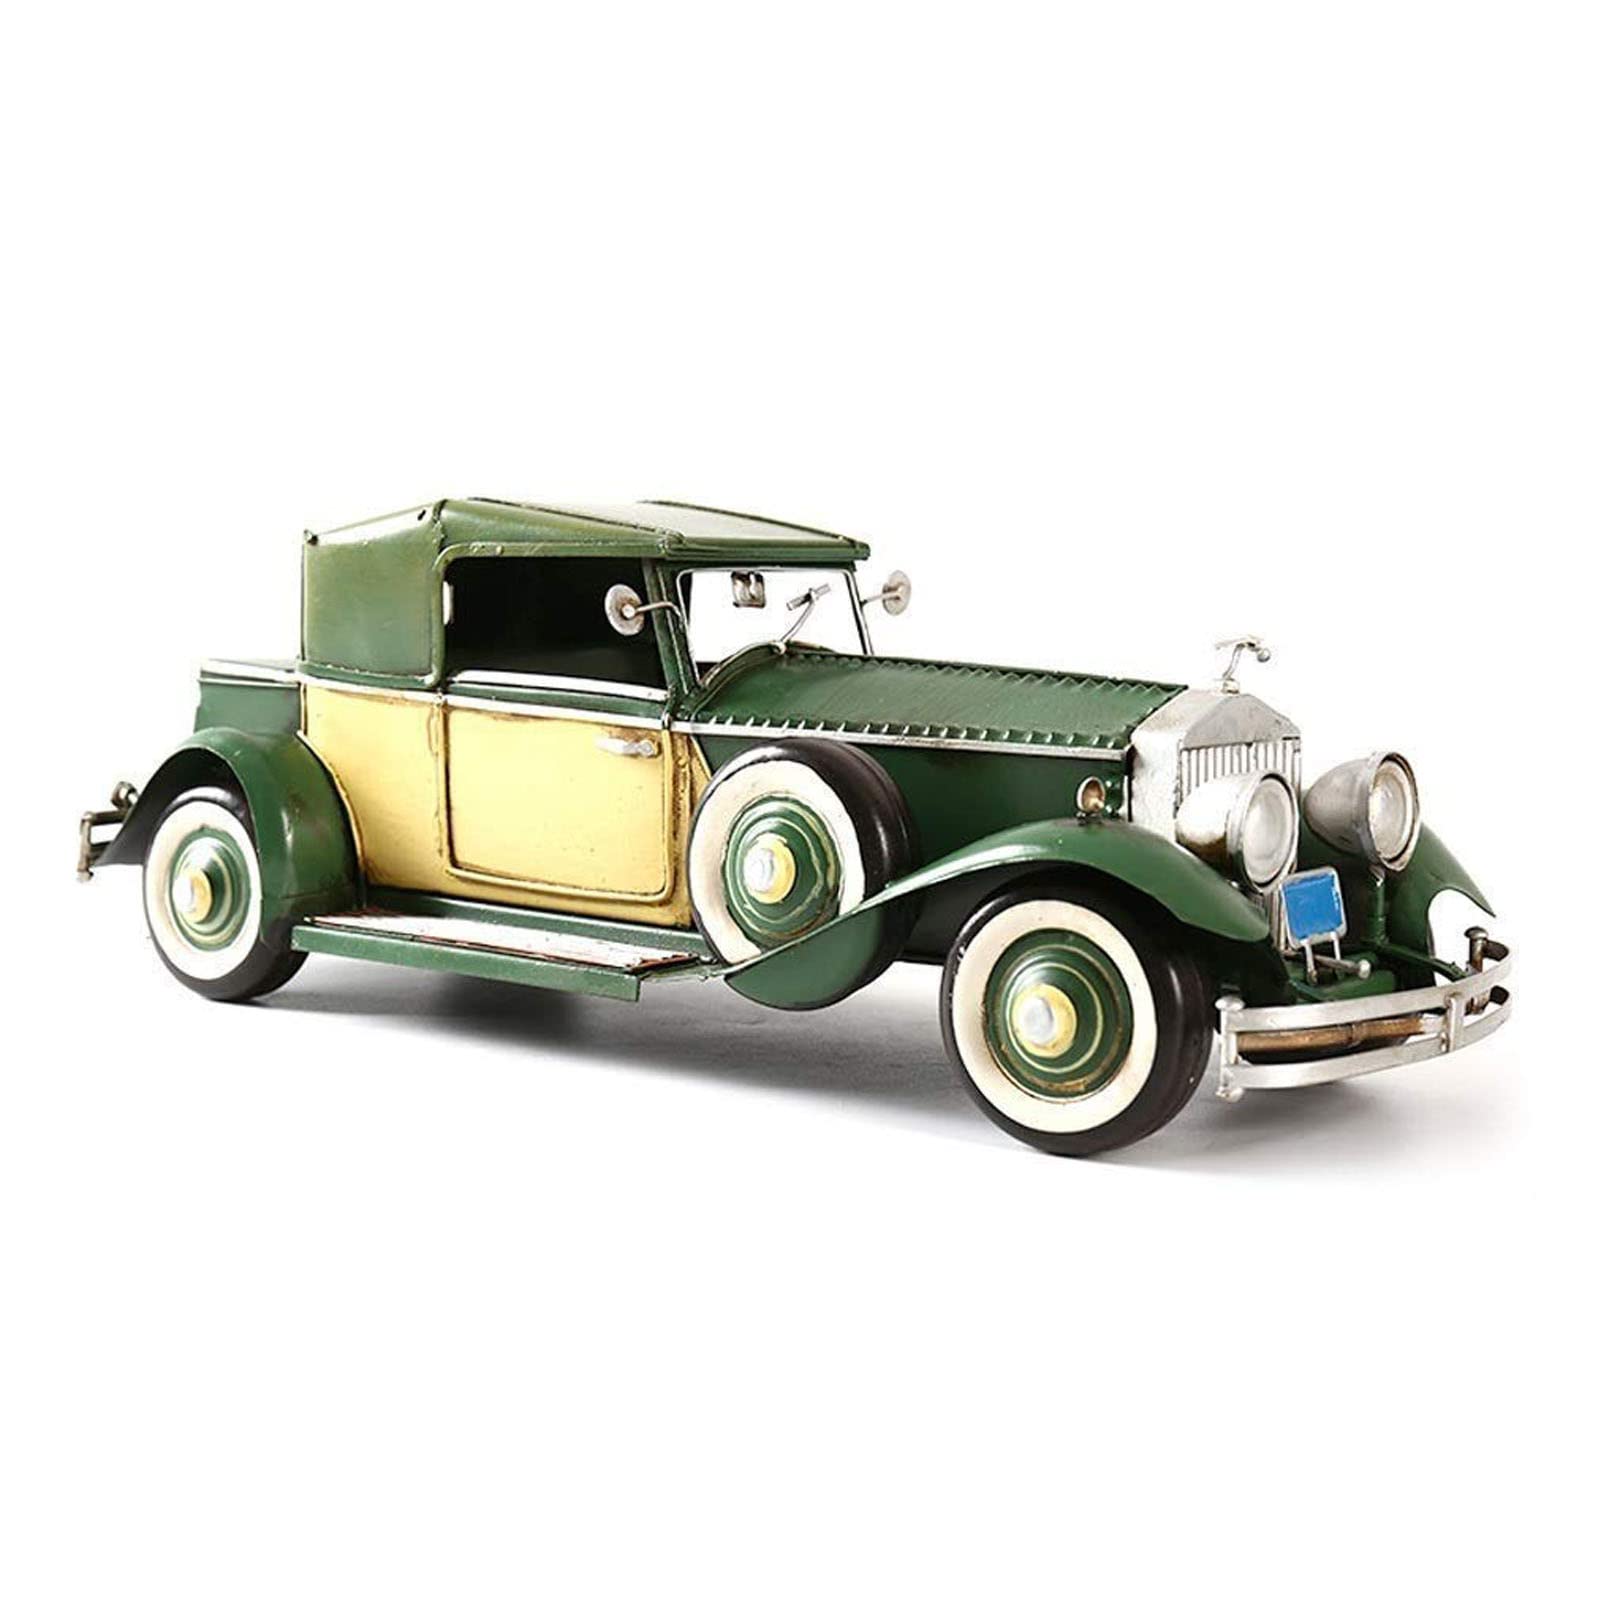 WangXLDD Modellauto kompatibel mit Rolls-Royce Phantom 1932 Modell im Maßstab 1:18, eisenbeschichtetes Ornament für Zuhause, Büro, Geschäft, Schreibtisch, Regal, Dekoration, Geschenk